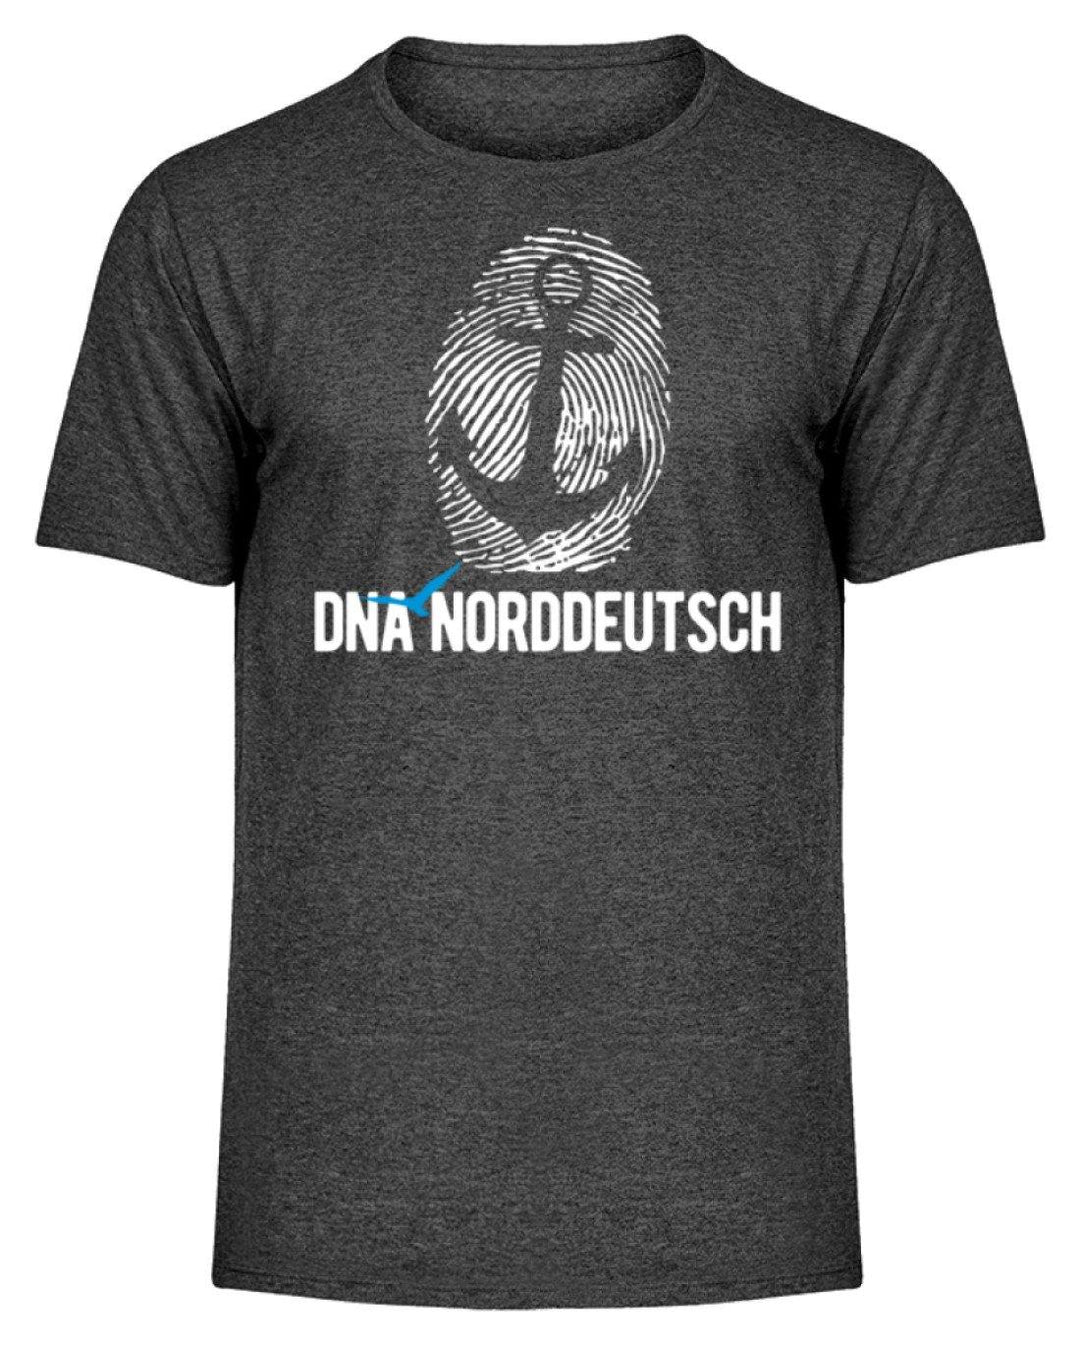 DNA Norddeutsch  - Herren Melange Shirt - Words on Shirts Sag es mit dem Mittelfinger Shirts Hoodies Sweatshirt Taschen Gymsack Spruch Sprüche Statement